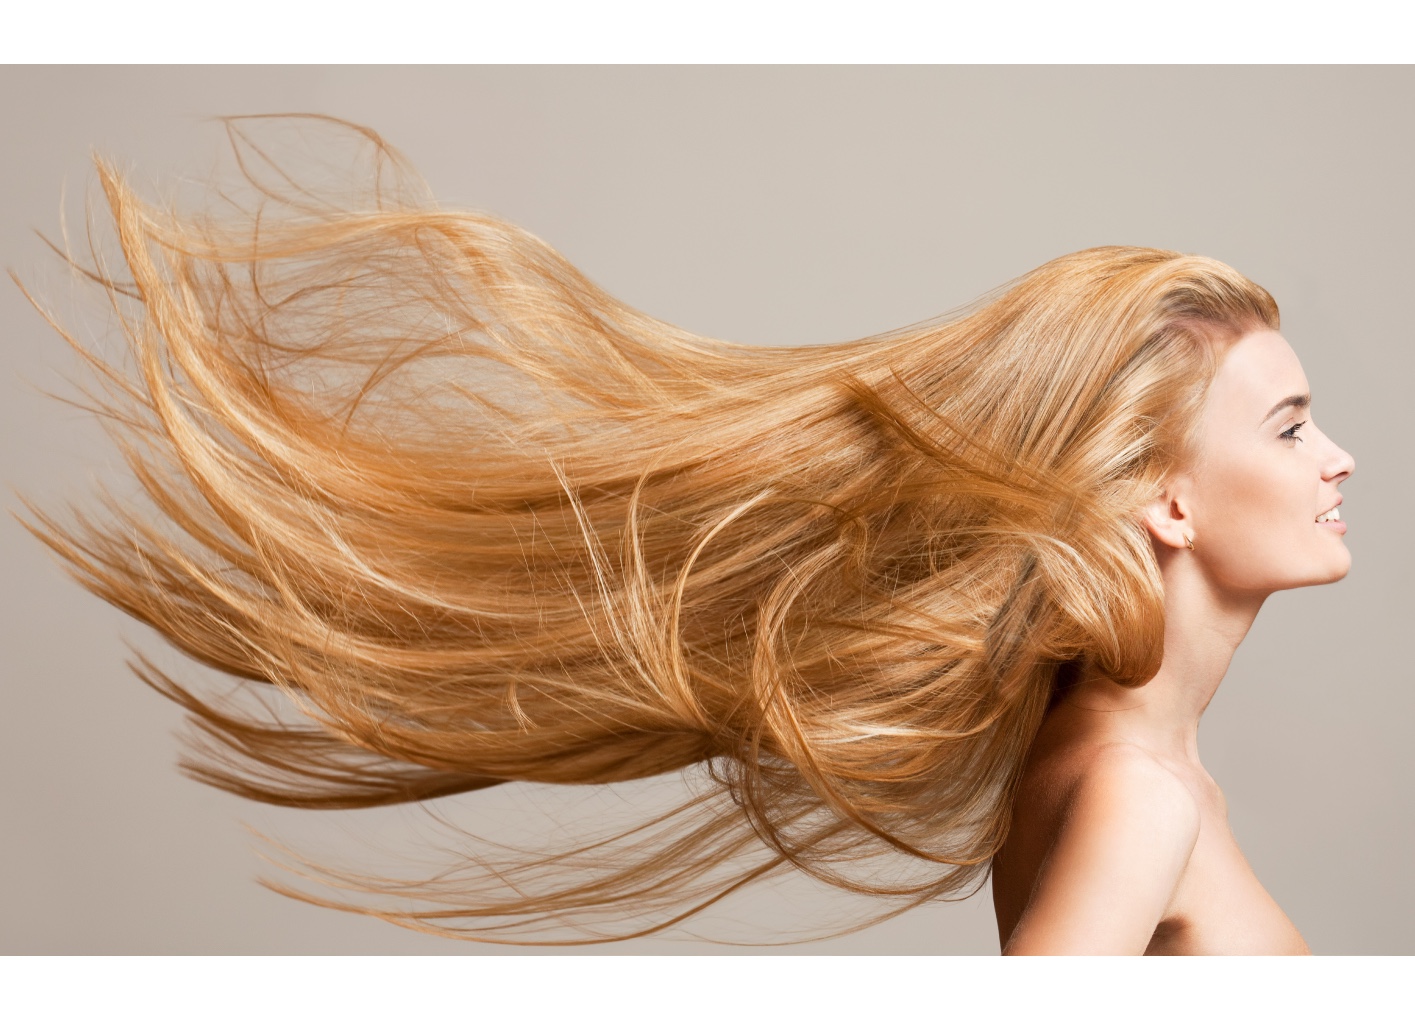 Comment aider votre cliente à garder ses cheveux en bonne santé ?